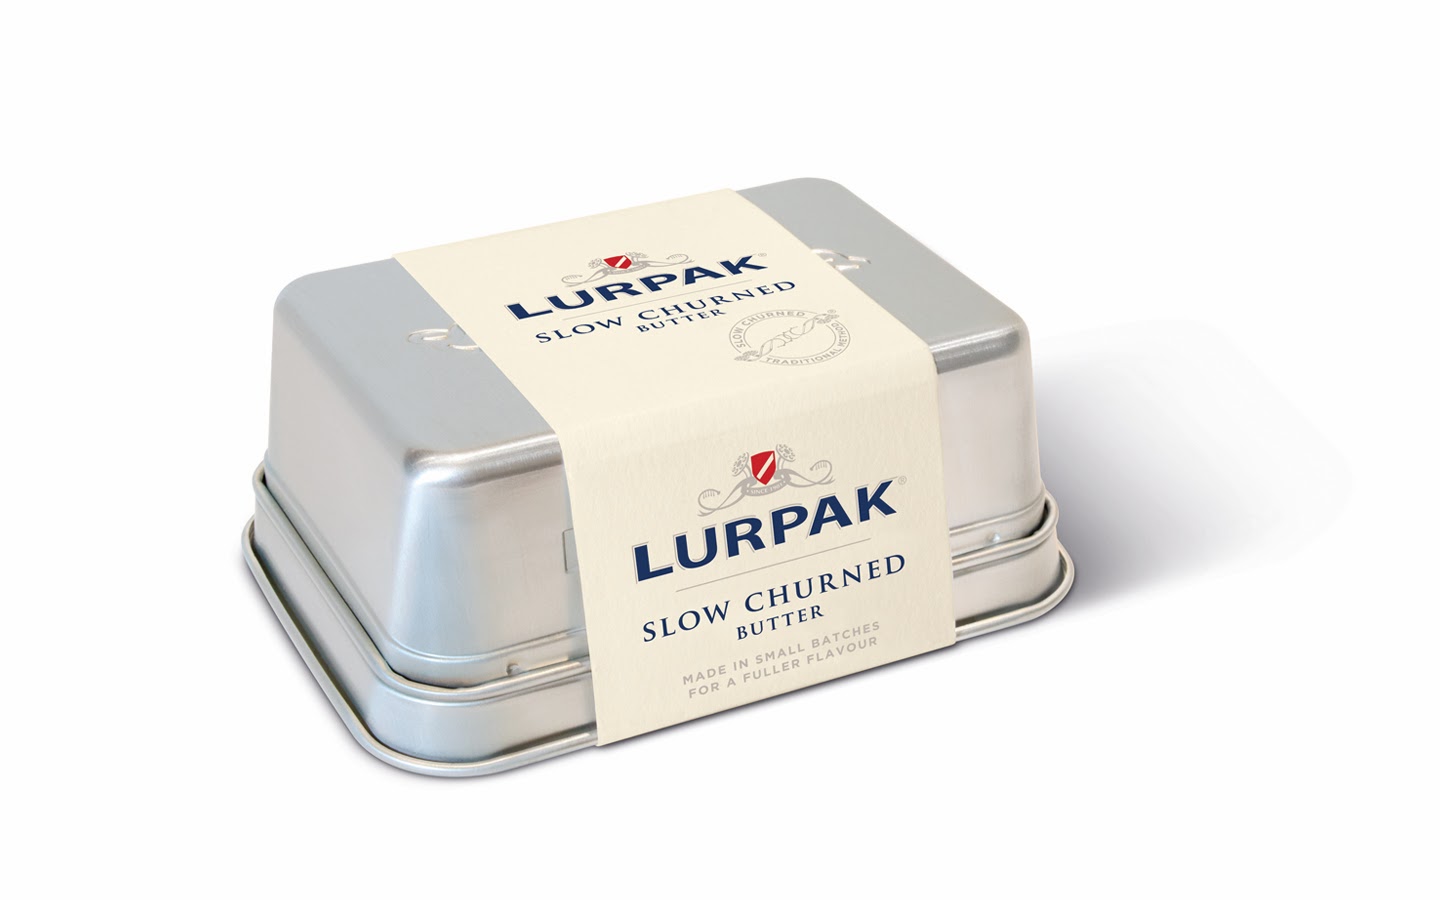 What is lurpak